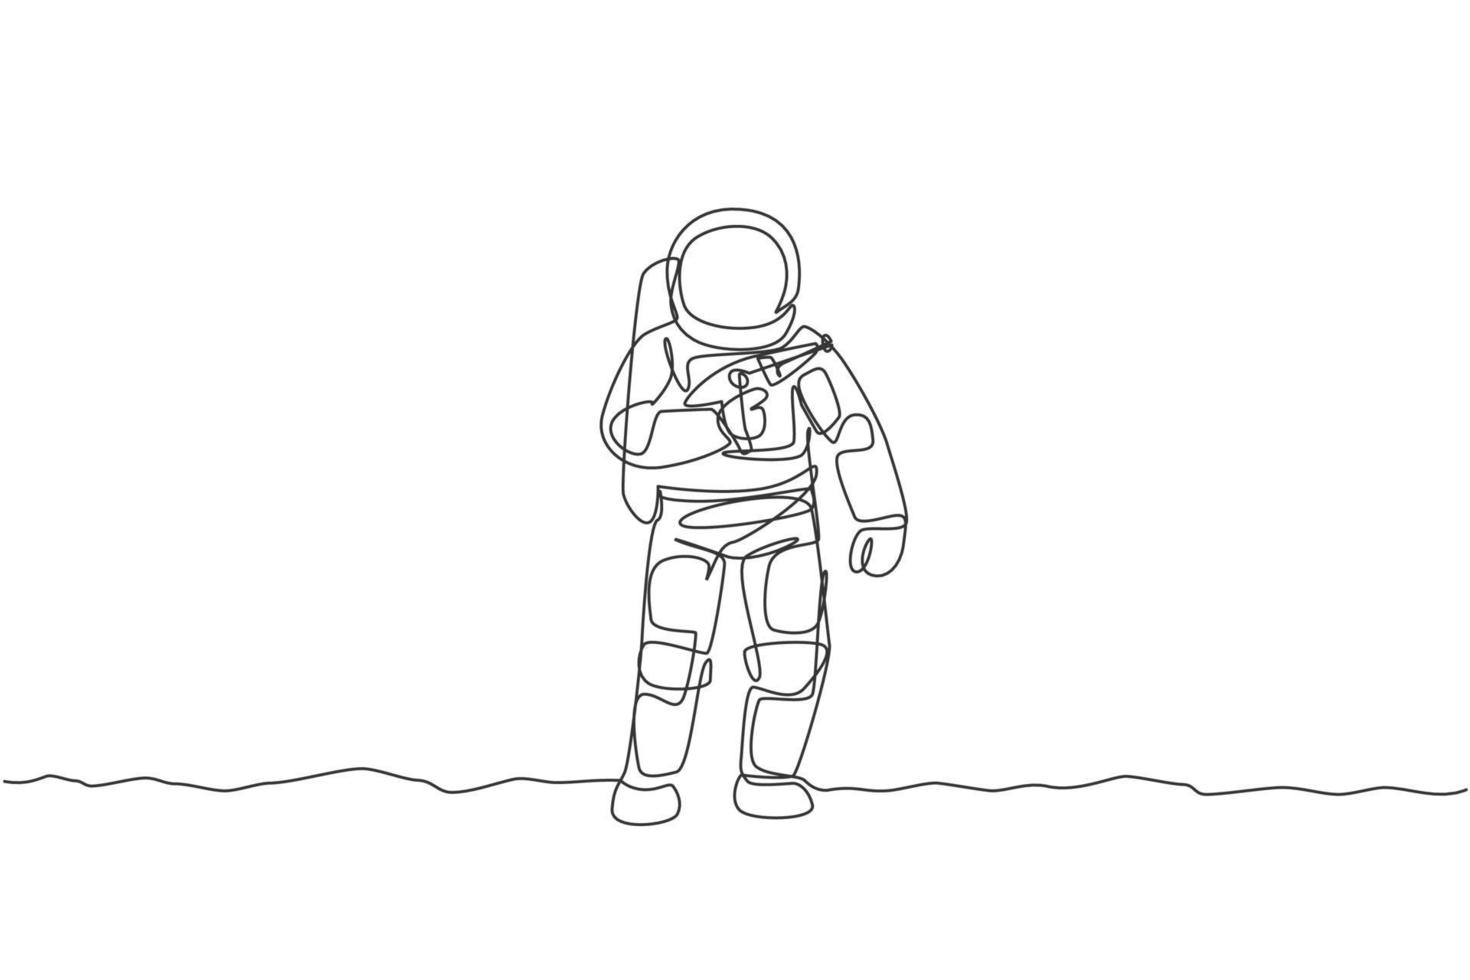 un singolo disegno a tratteggio del giovane astronauta che tiene la pistola laser spaziale, prepararsi alla guerra nell'illustrazione grafica vettoriale della superficie lunare. concetto di spazio profondo del cosmonauta. design moderno a linea continua